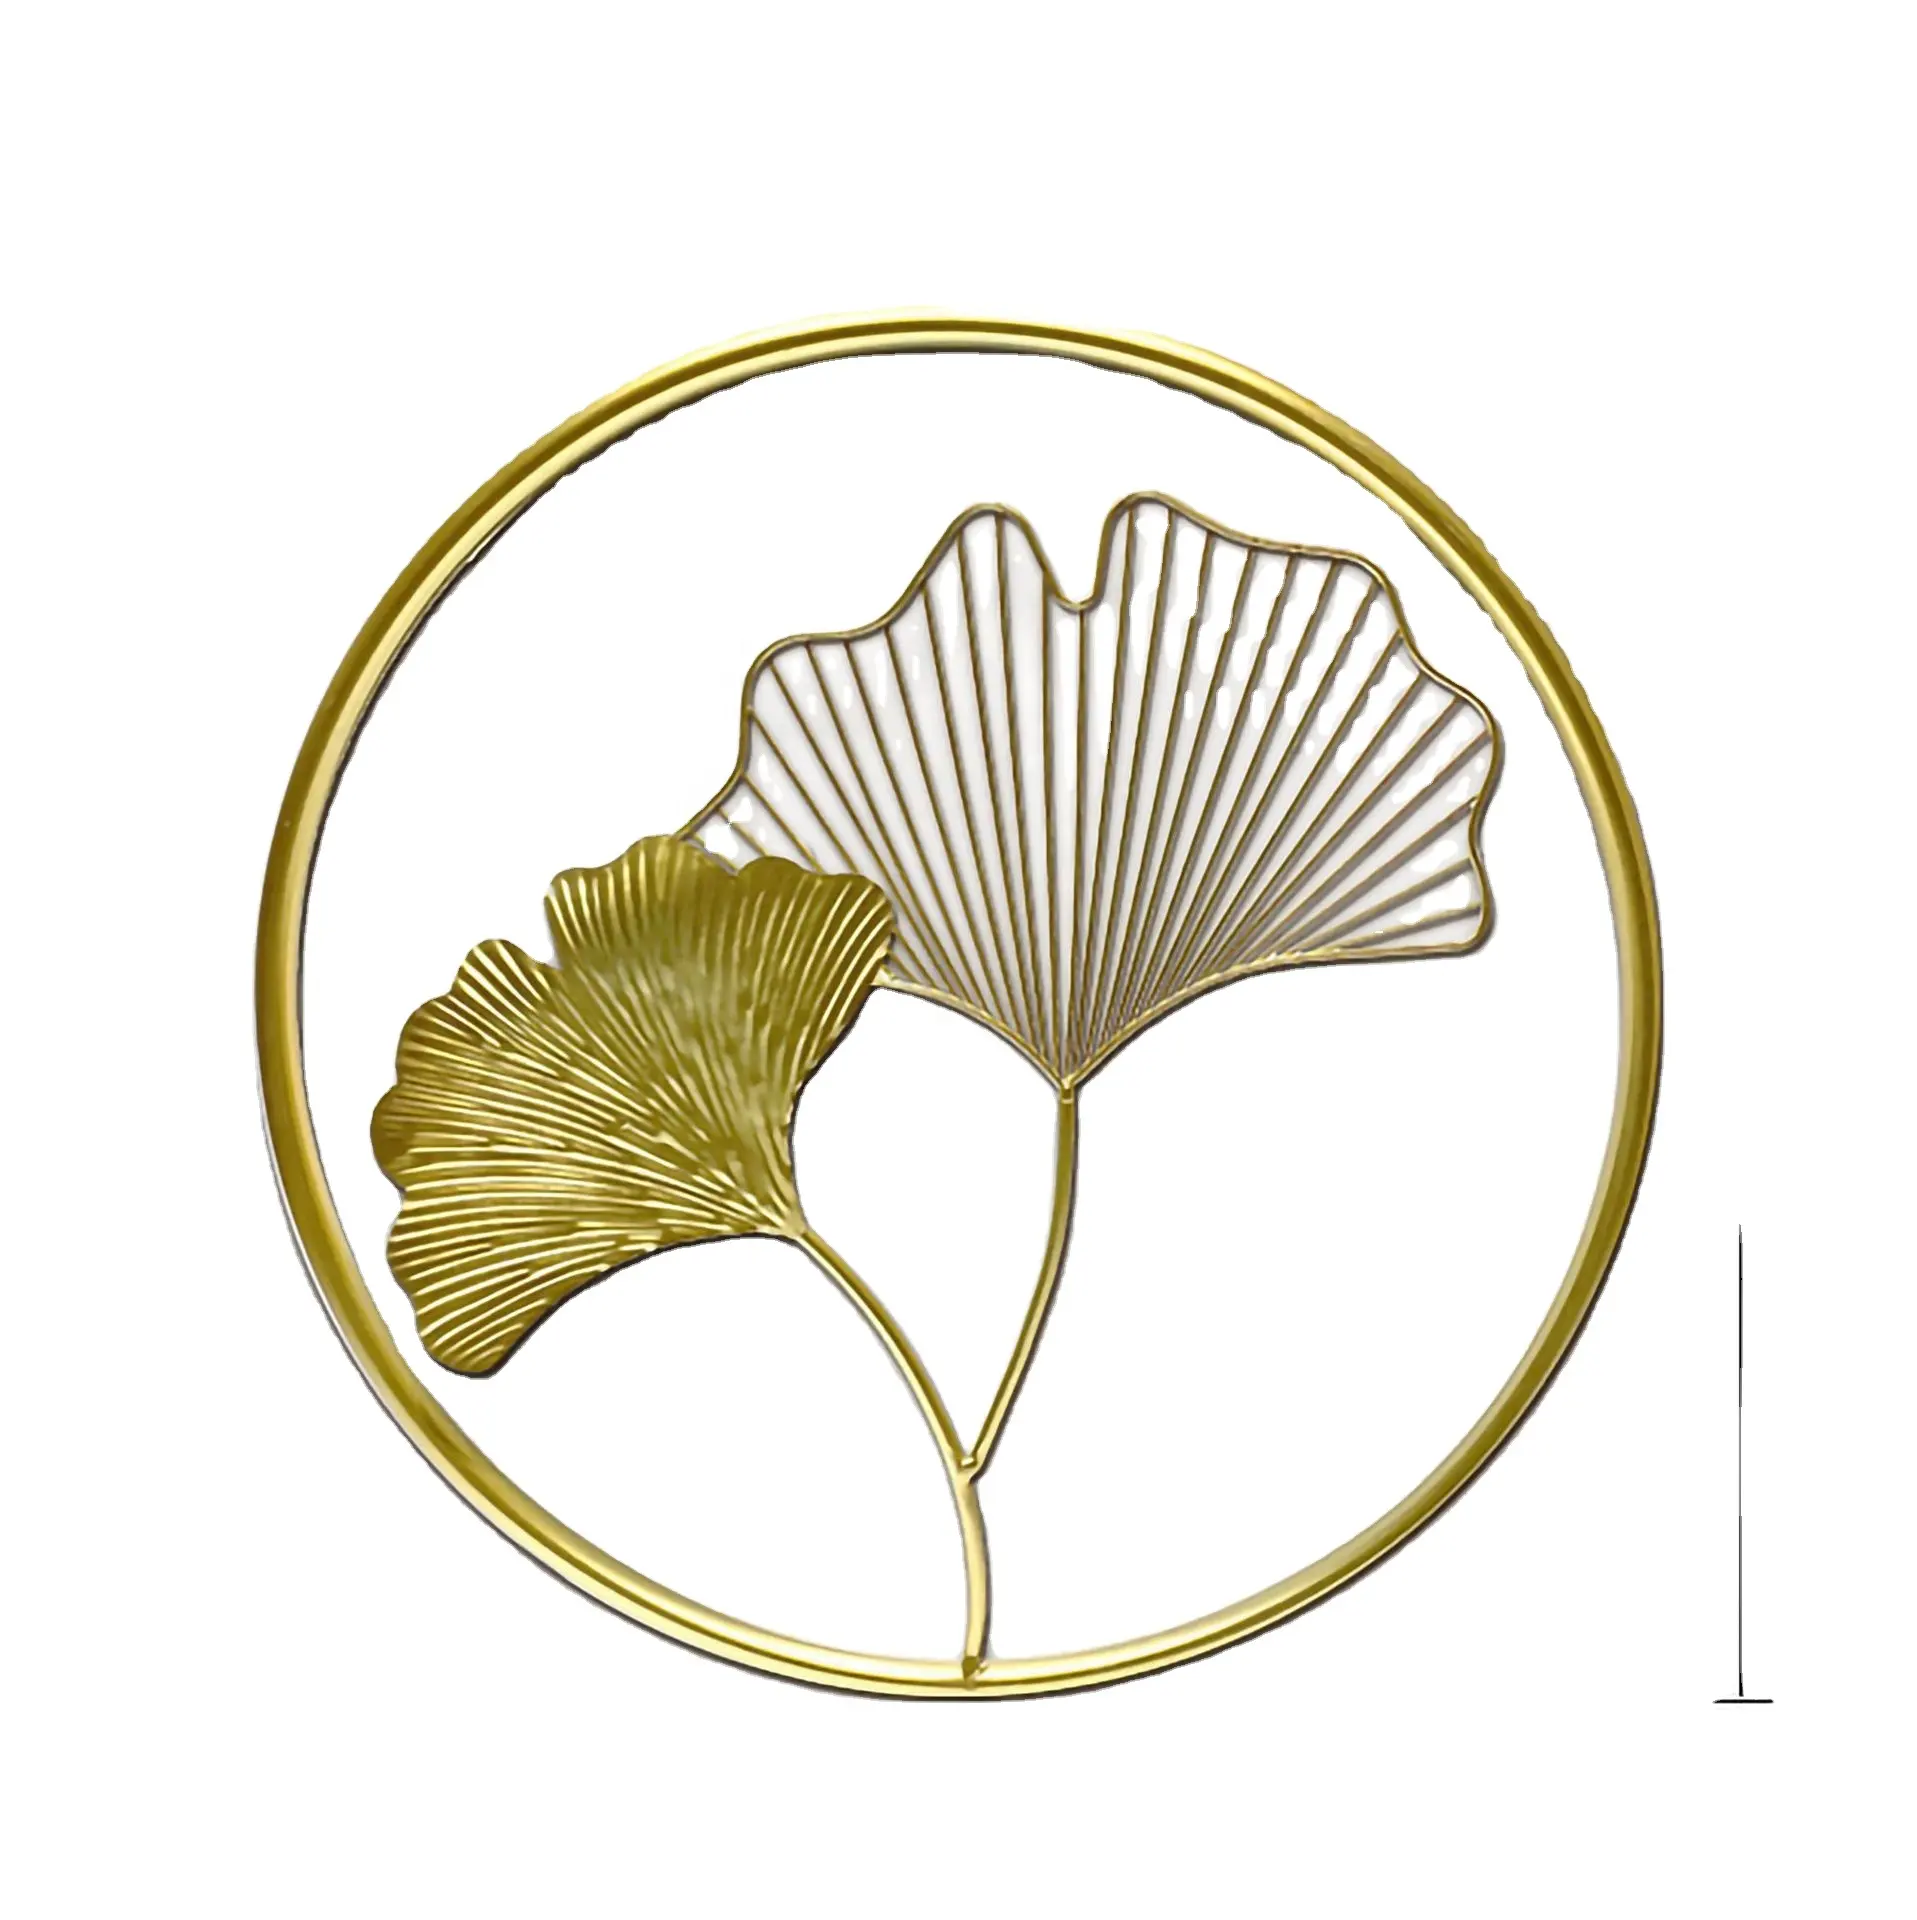 Wand montage Gold Zubehör Großhandel Metall Ginkgo Leaf Art Crafts Home Decor Stücke Luxus Dekor